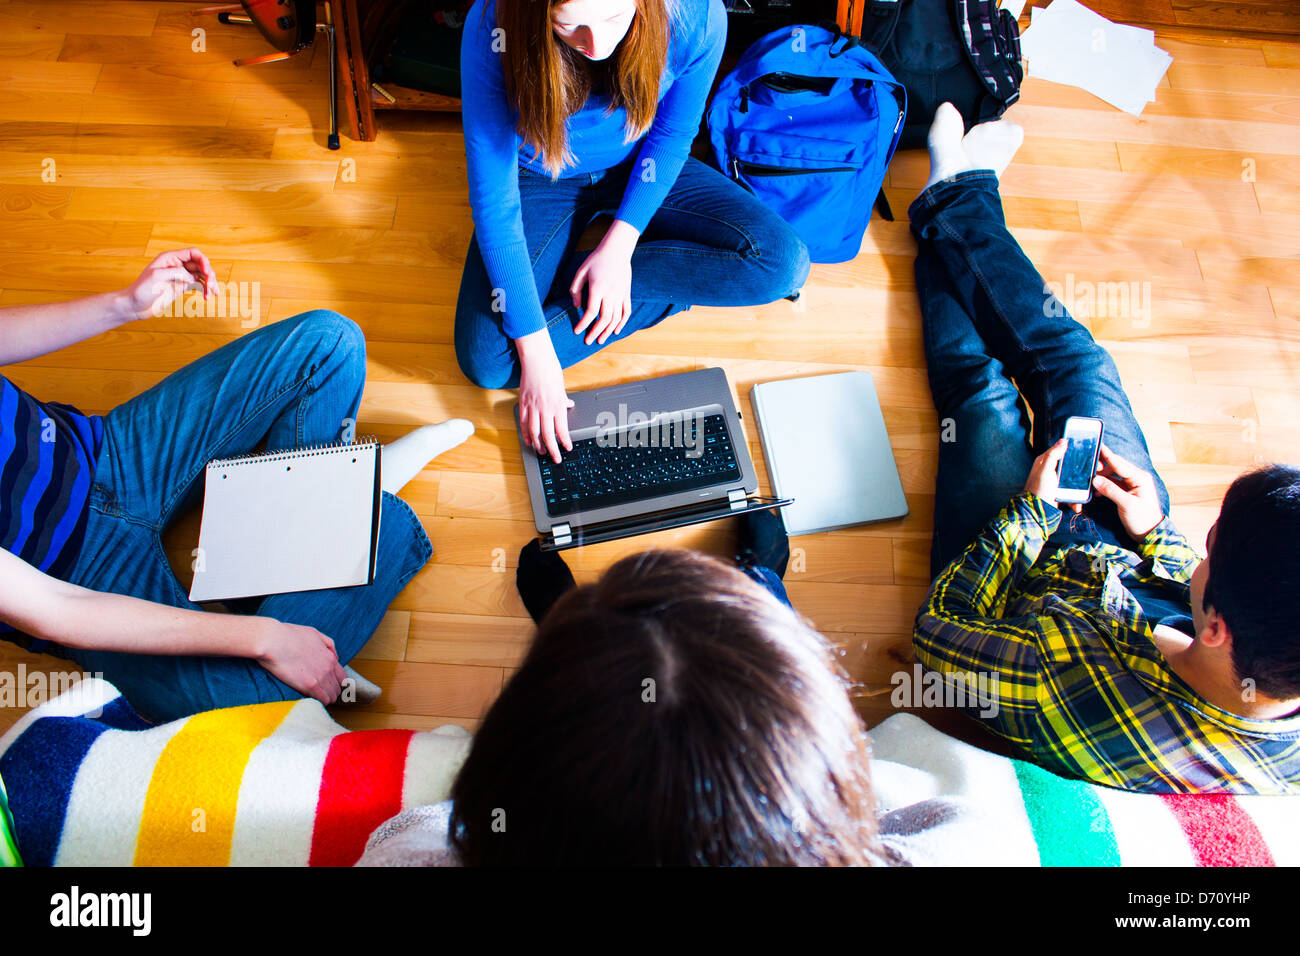 Vue aérienne d'un groupe d'adolescents sur le plancher sur un projet en utilisant différents moyens et techniques. multi media concept Banque D'Images